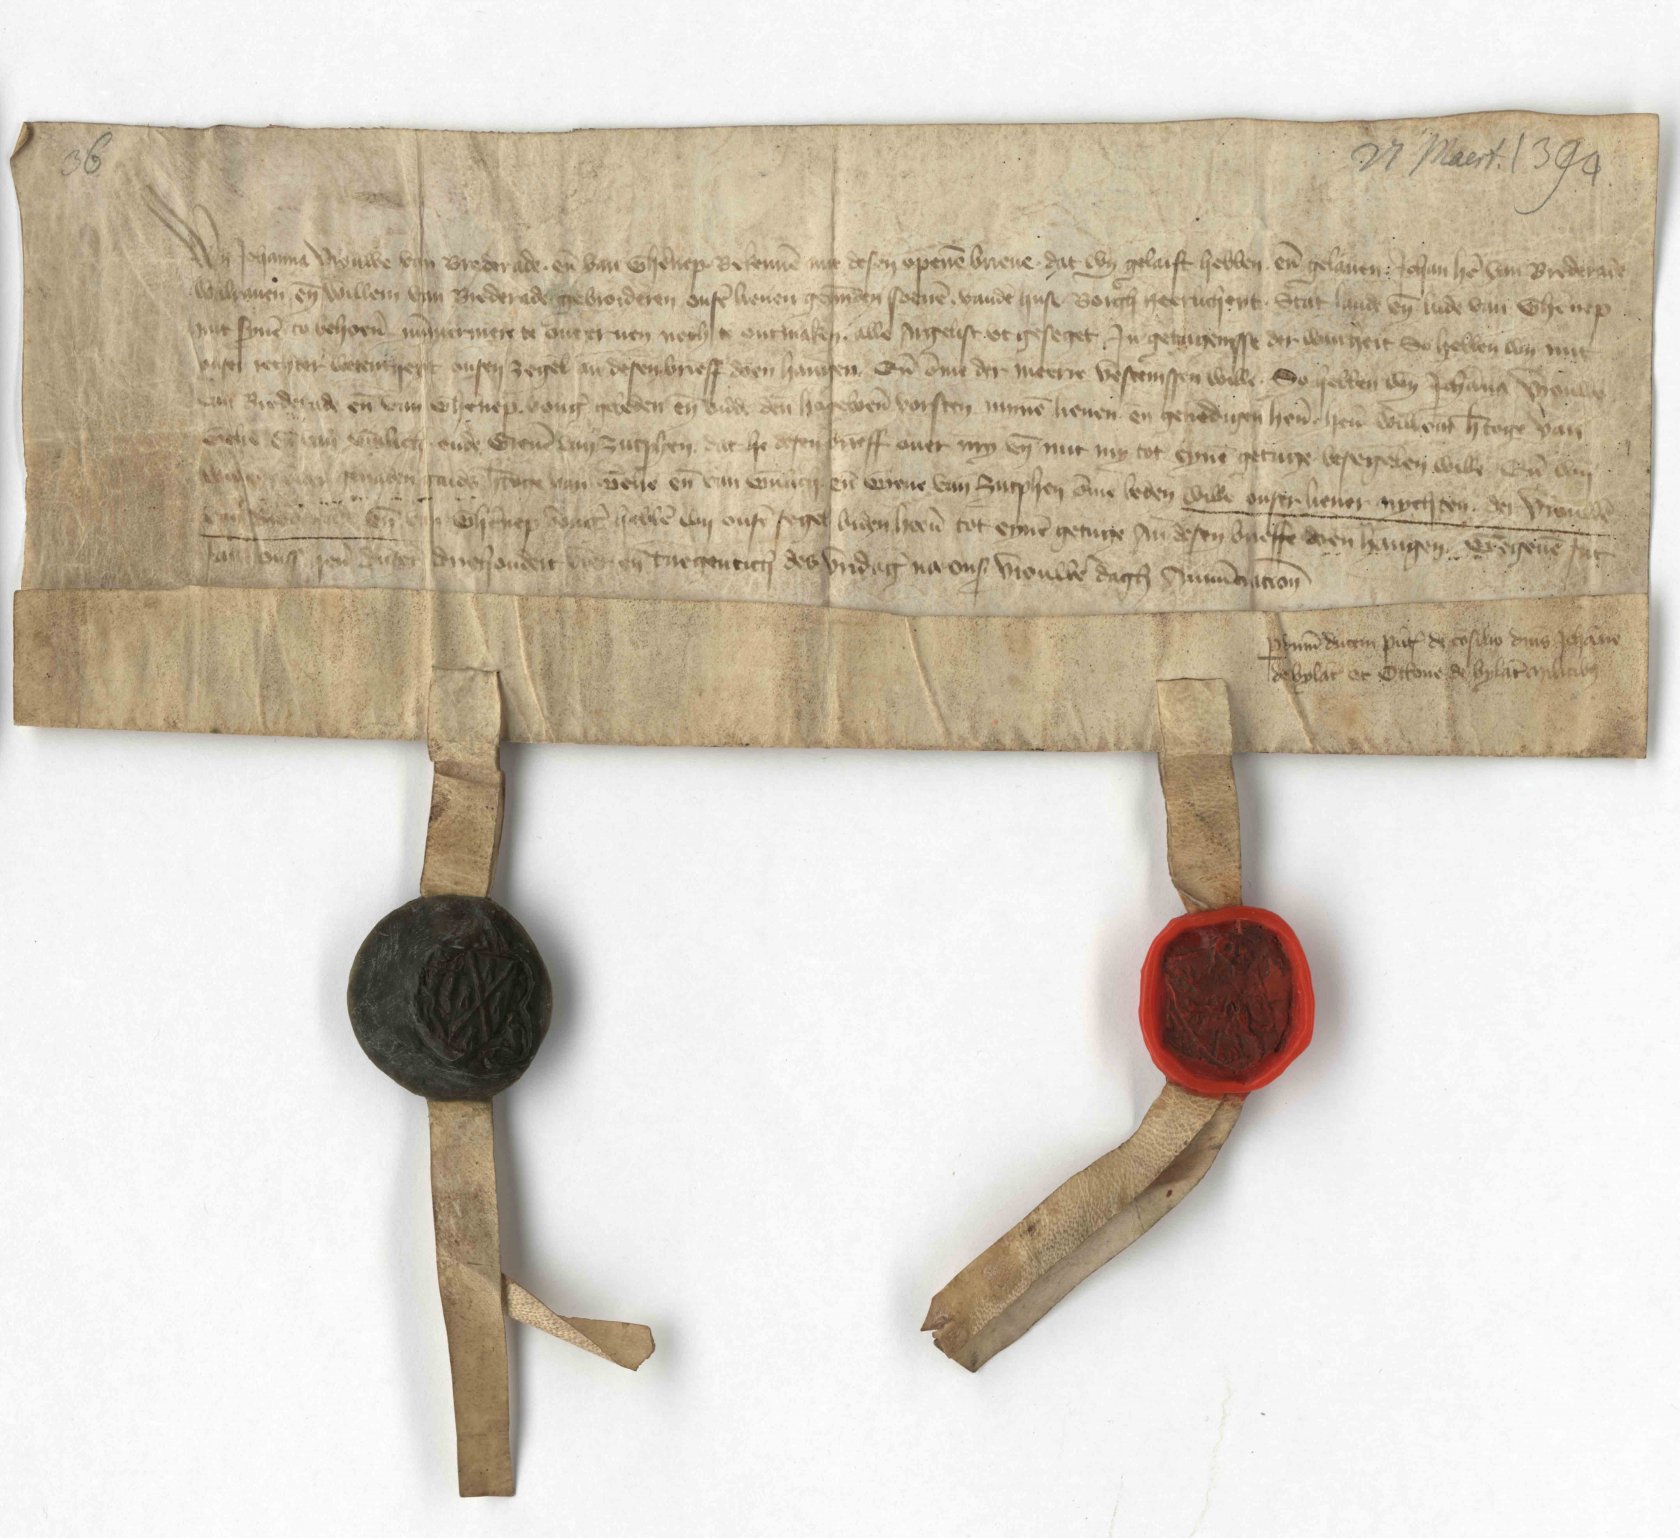 Oorkonde uit 1394 over de erfenis van Jolanda van Gennep, mede bezegeld door de hertog van Gelre